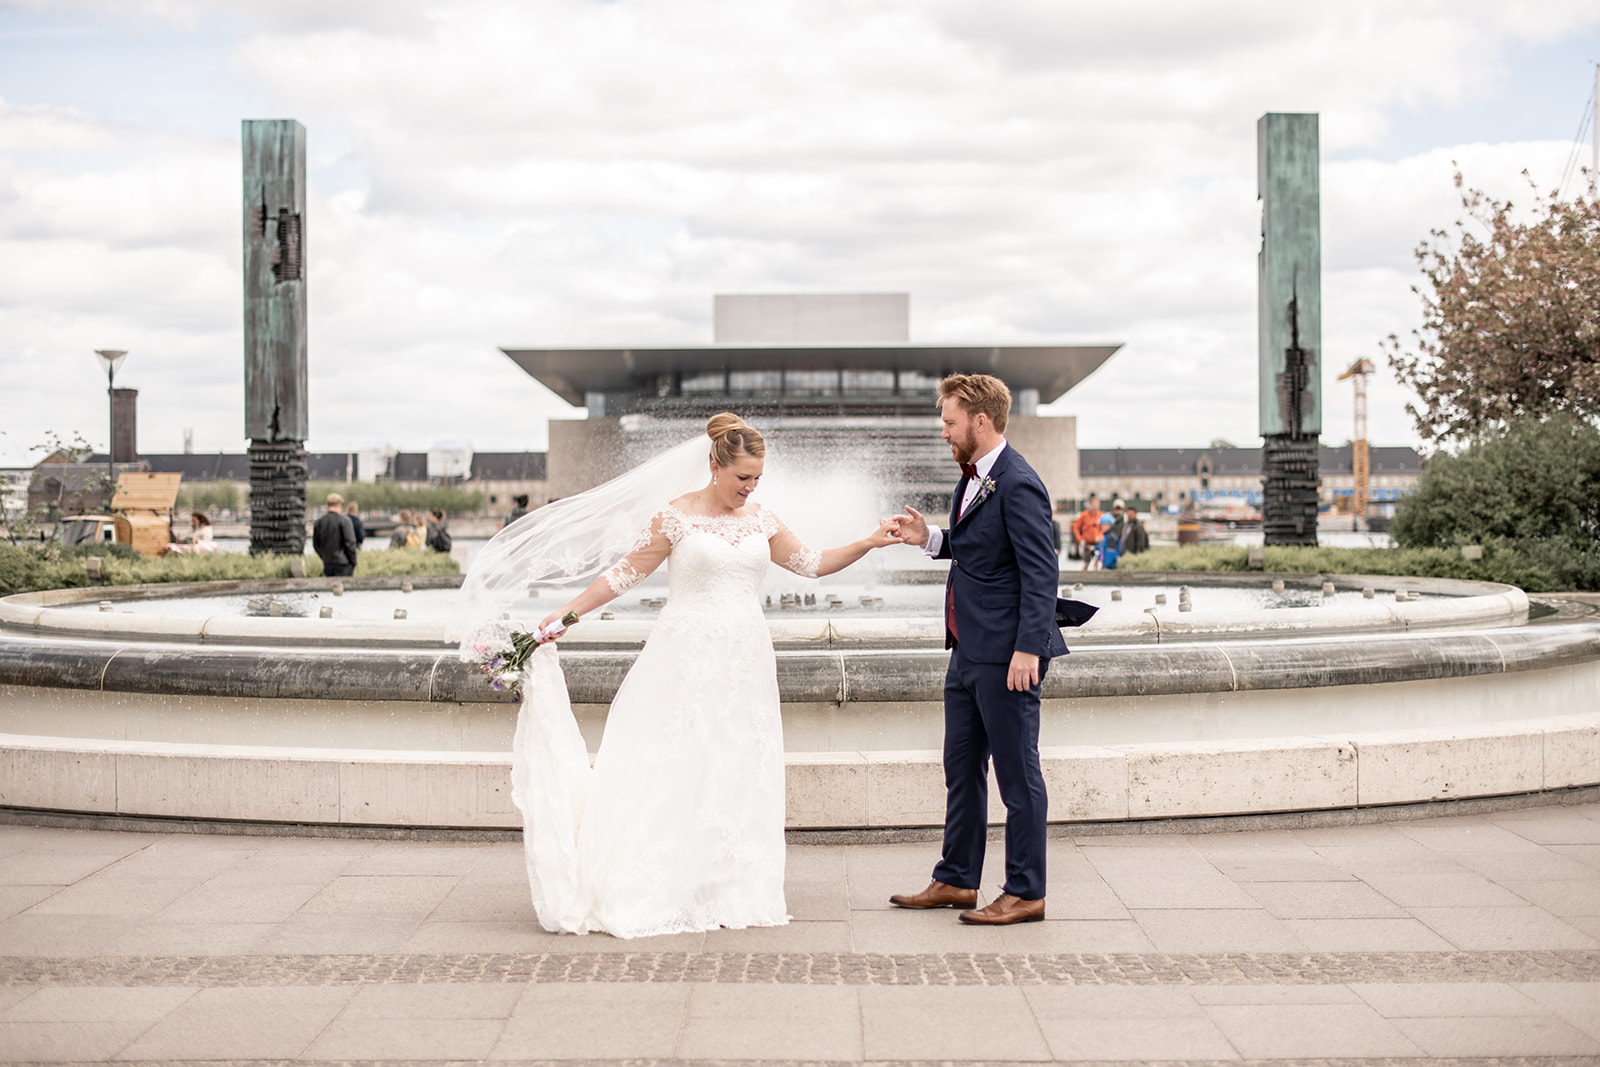 Bryllupsbilleder foran springvandet i Amaliehaven på Amalienborg Slotsplads i København